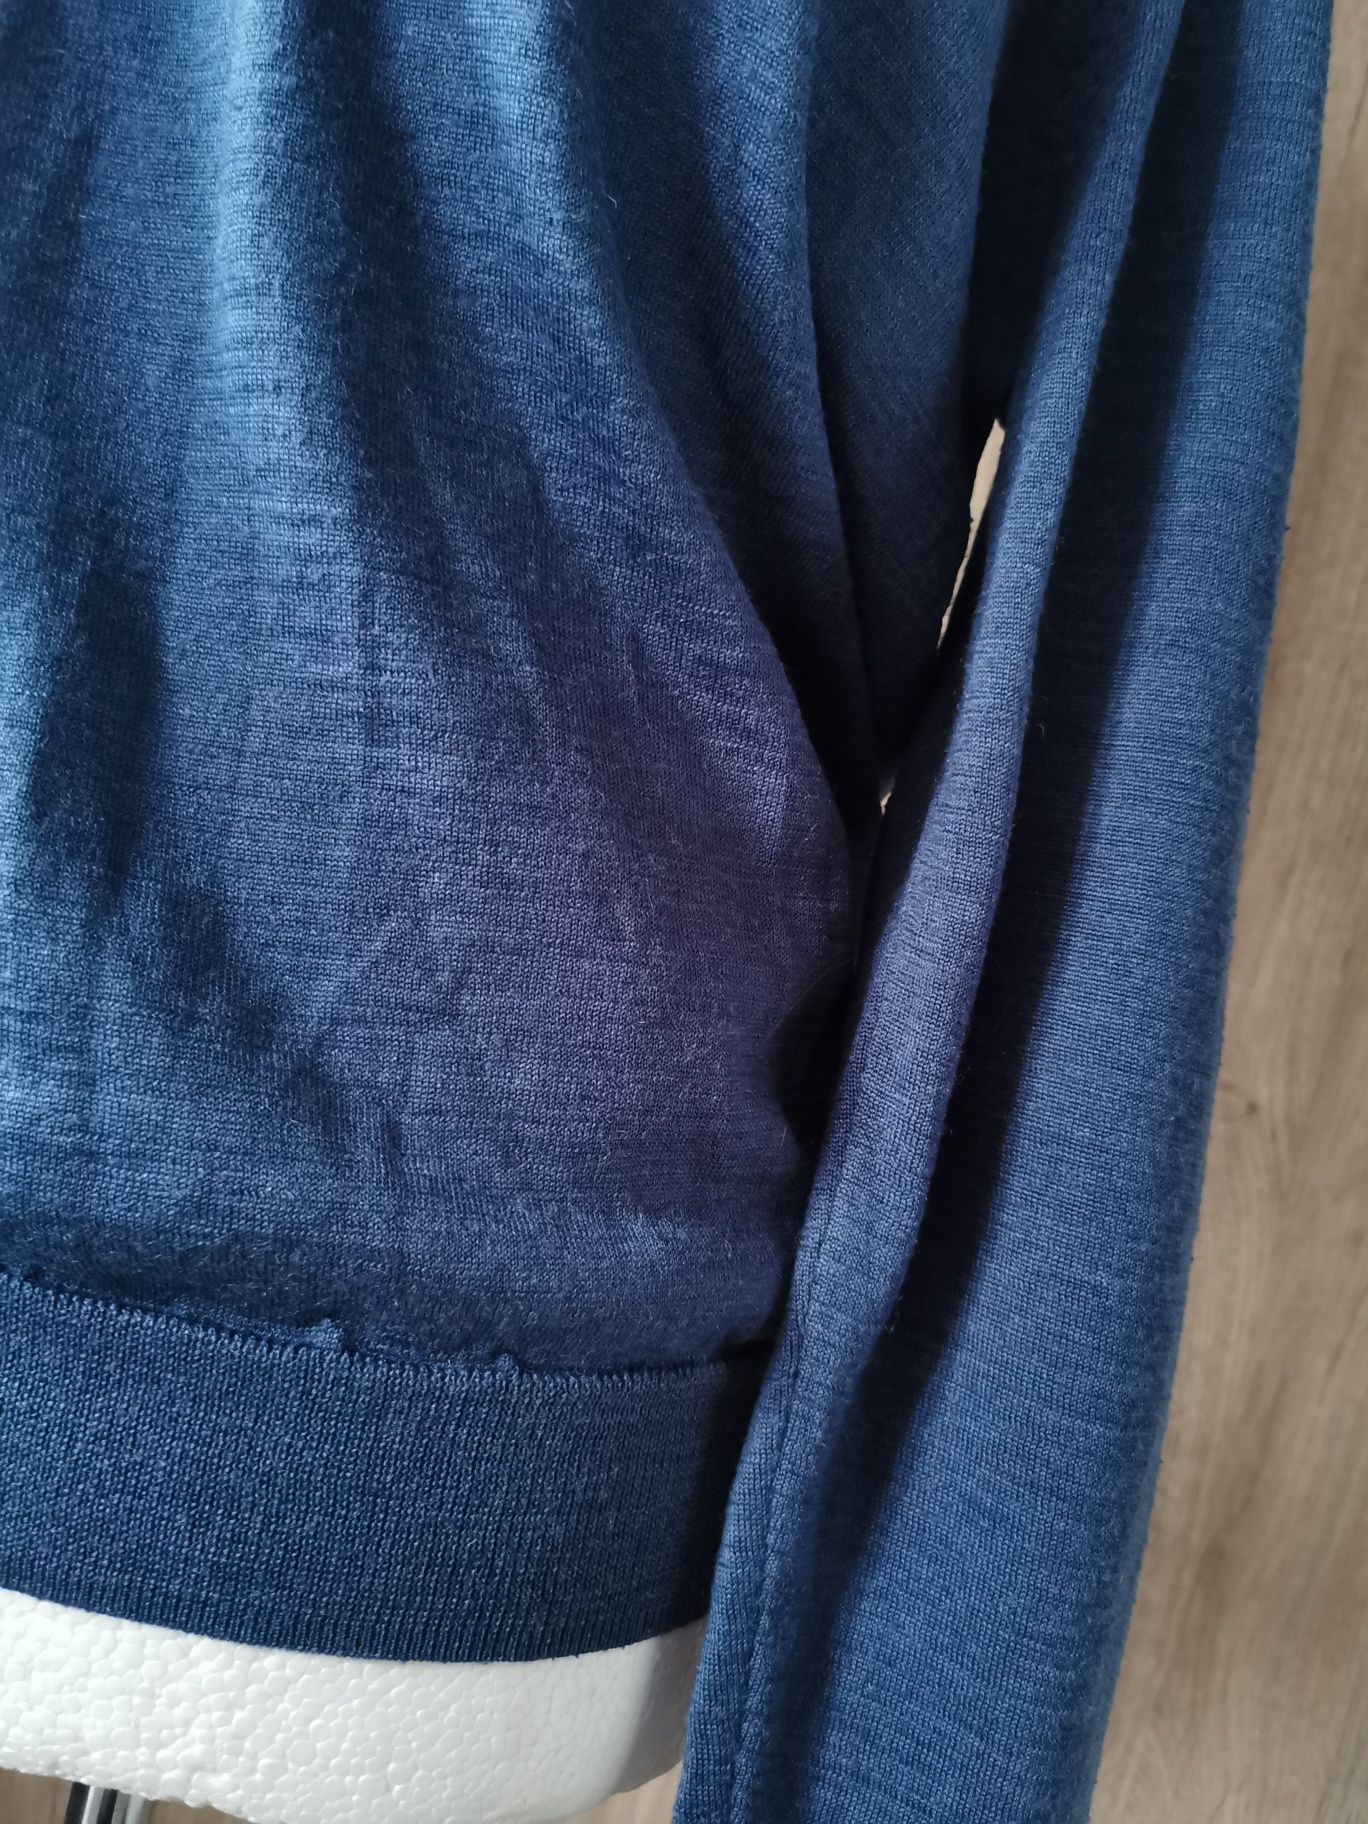 Gino Marcello niebieski sweter wełniany XL 50% wełna wool